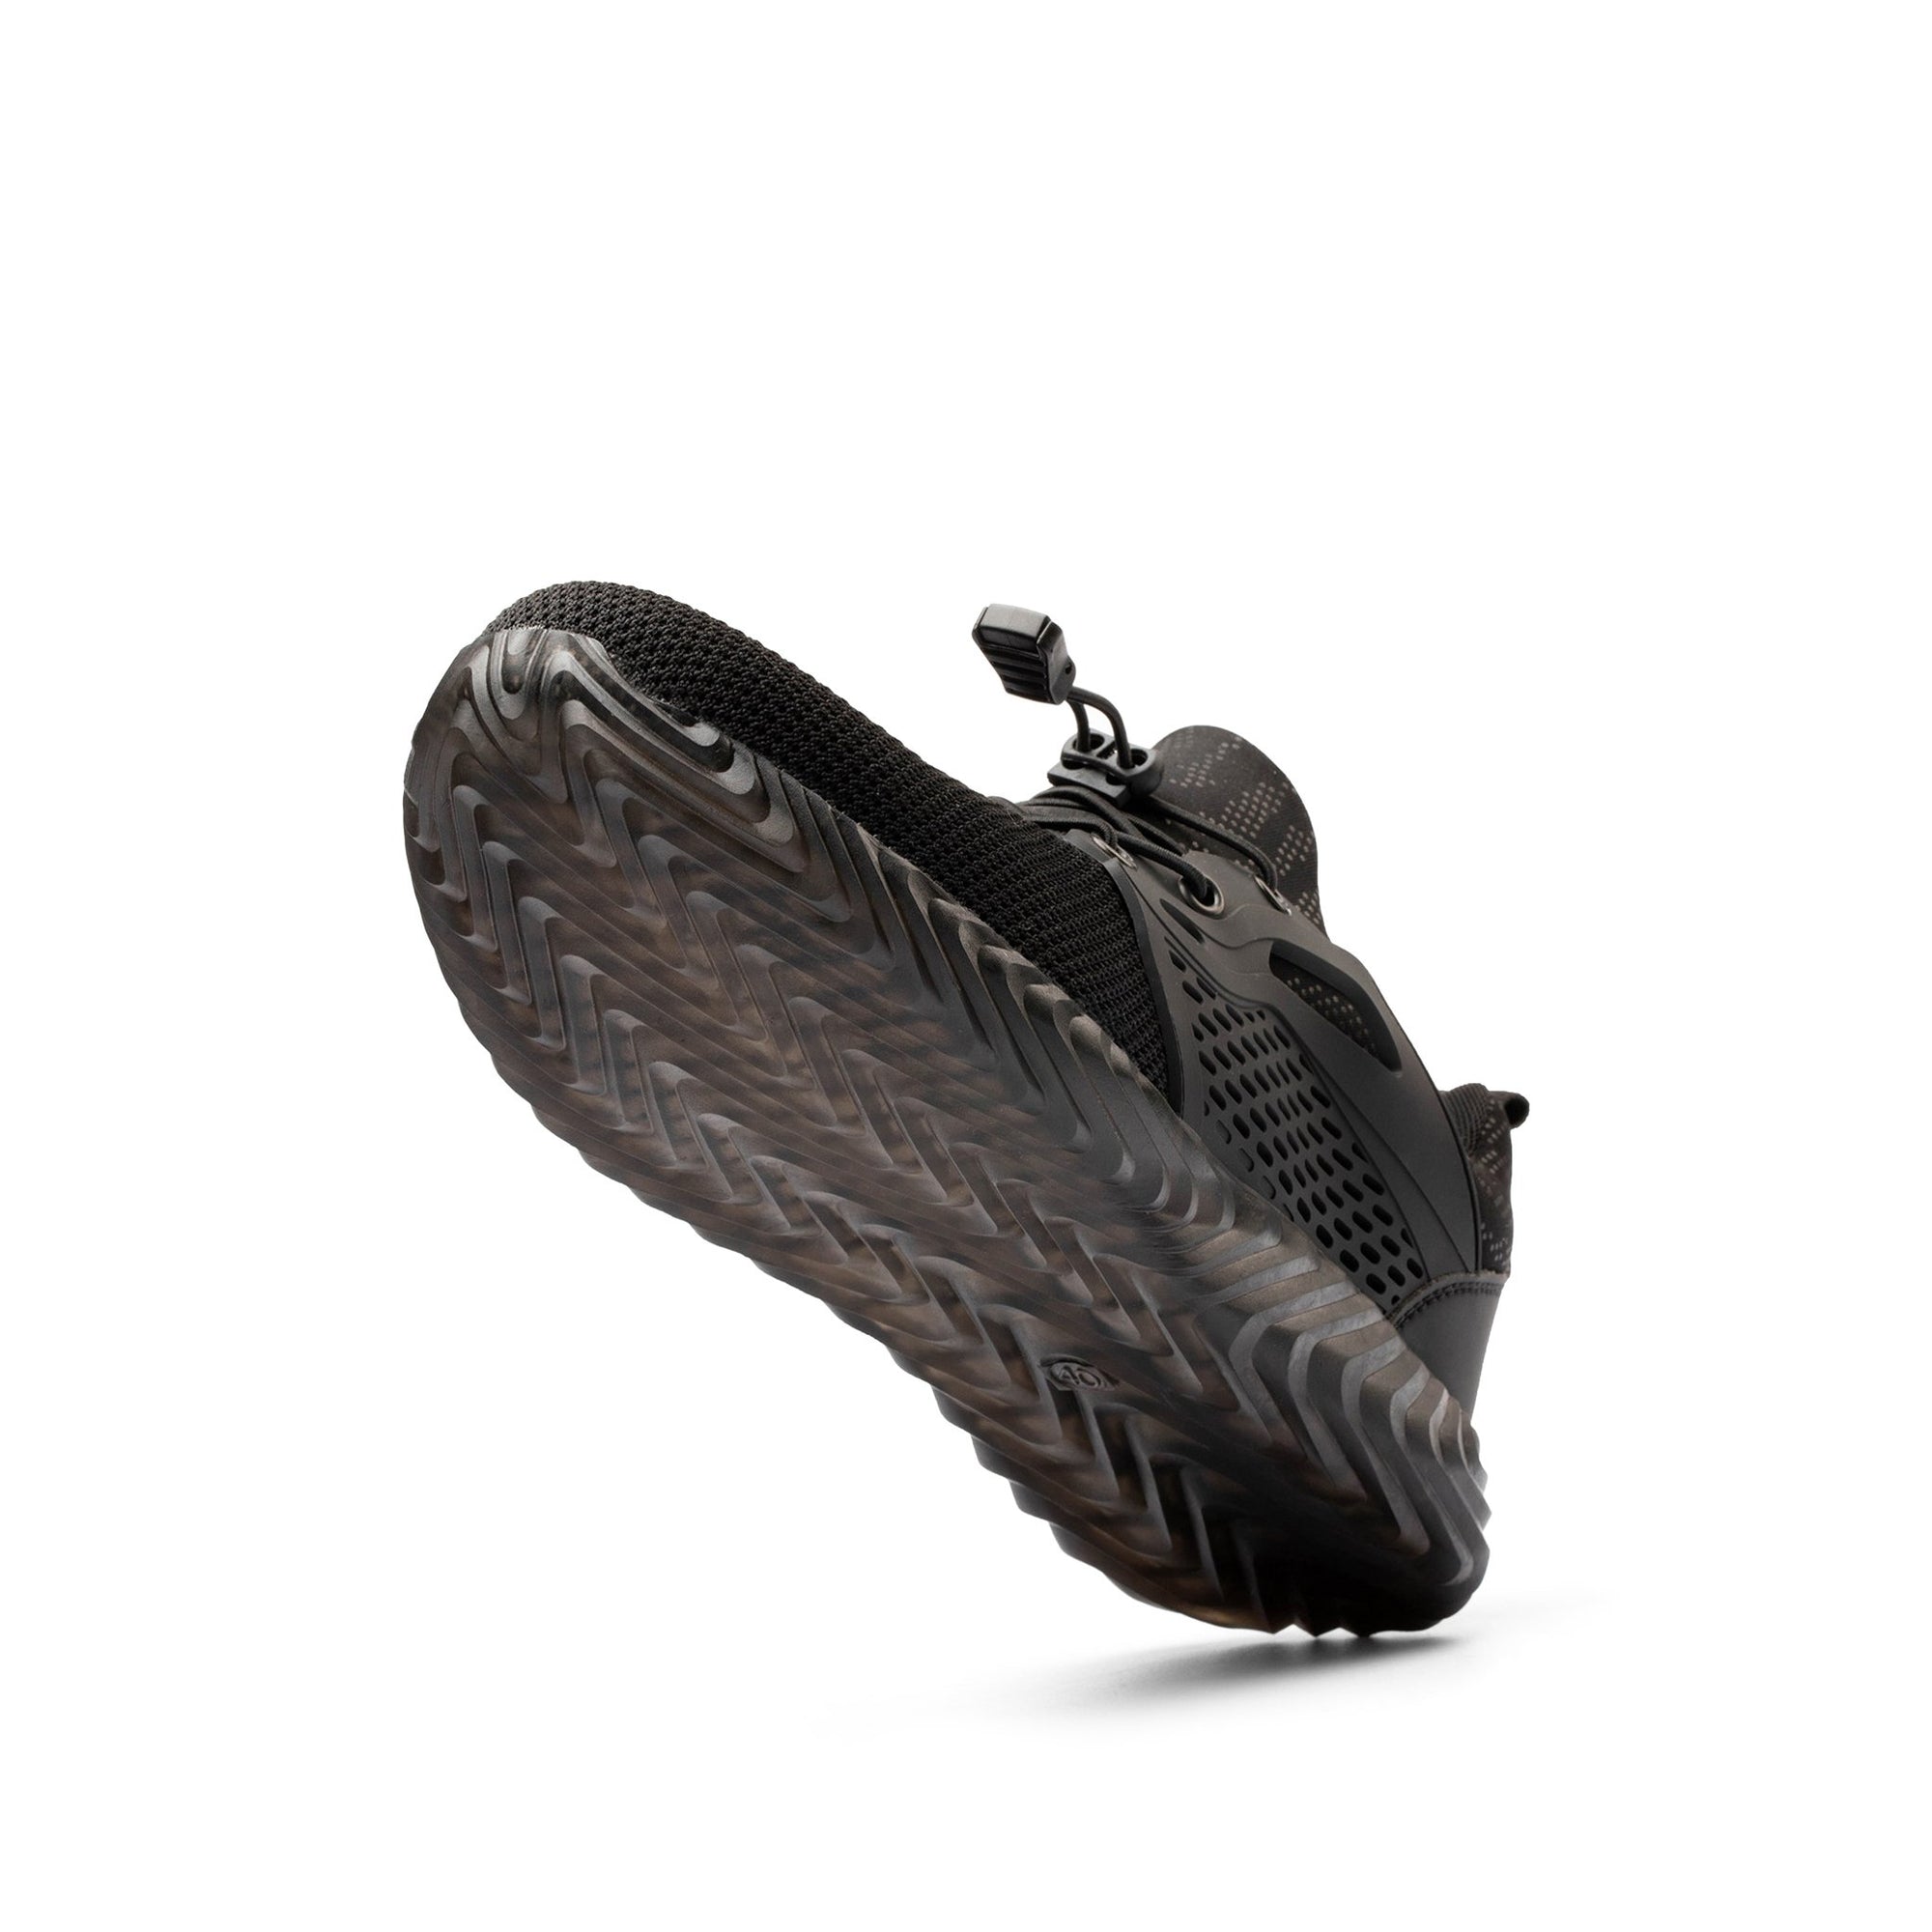 Ryder 1.5 Black - Indestructible Shoes